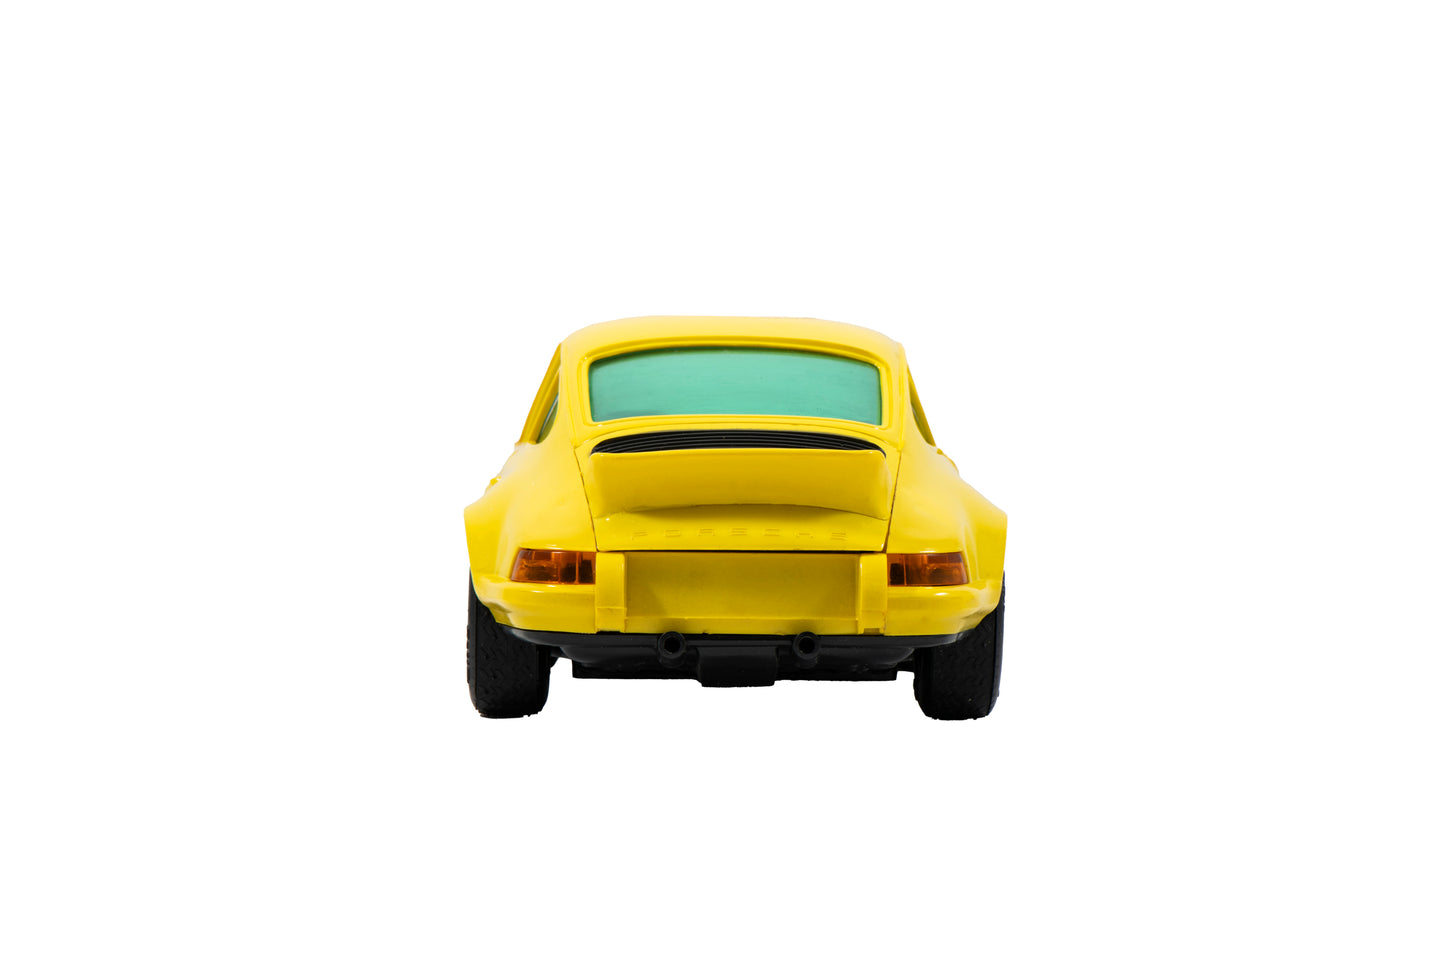 Porsche 911R Toy by Schuco